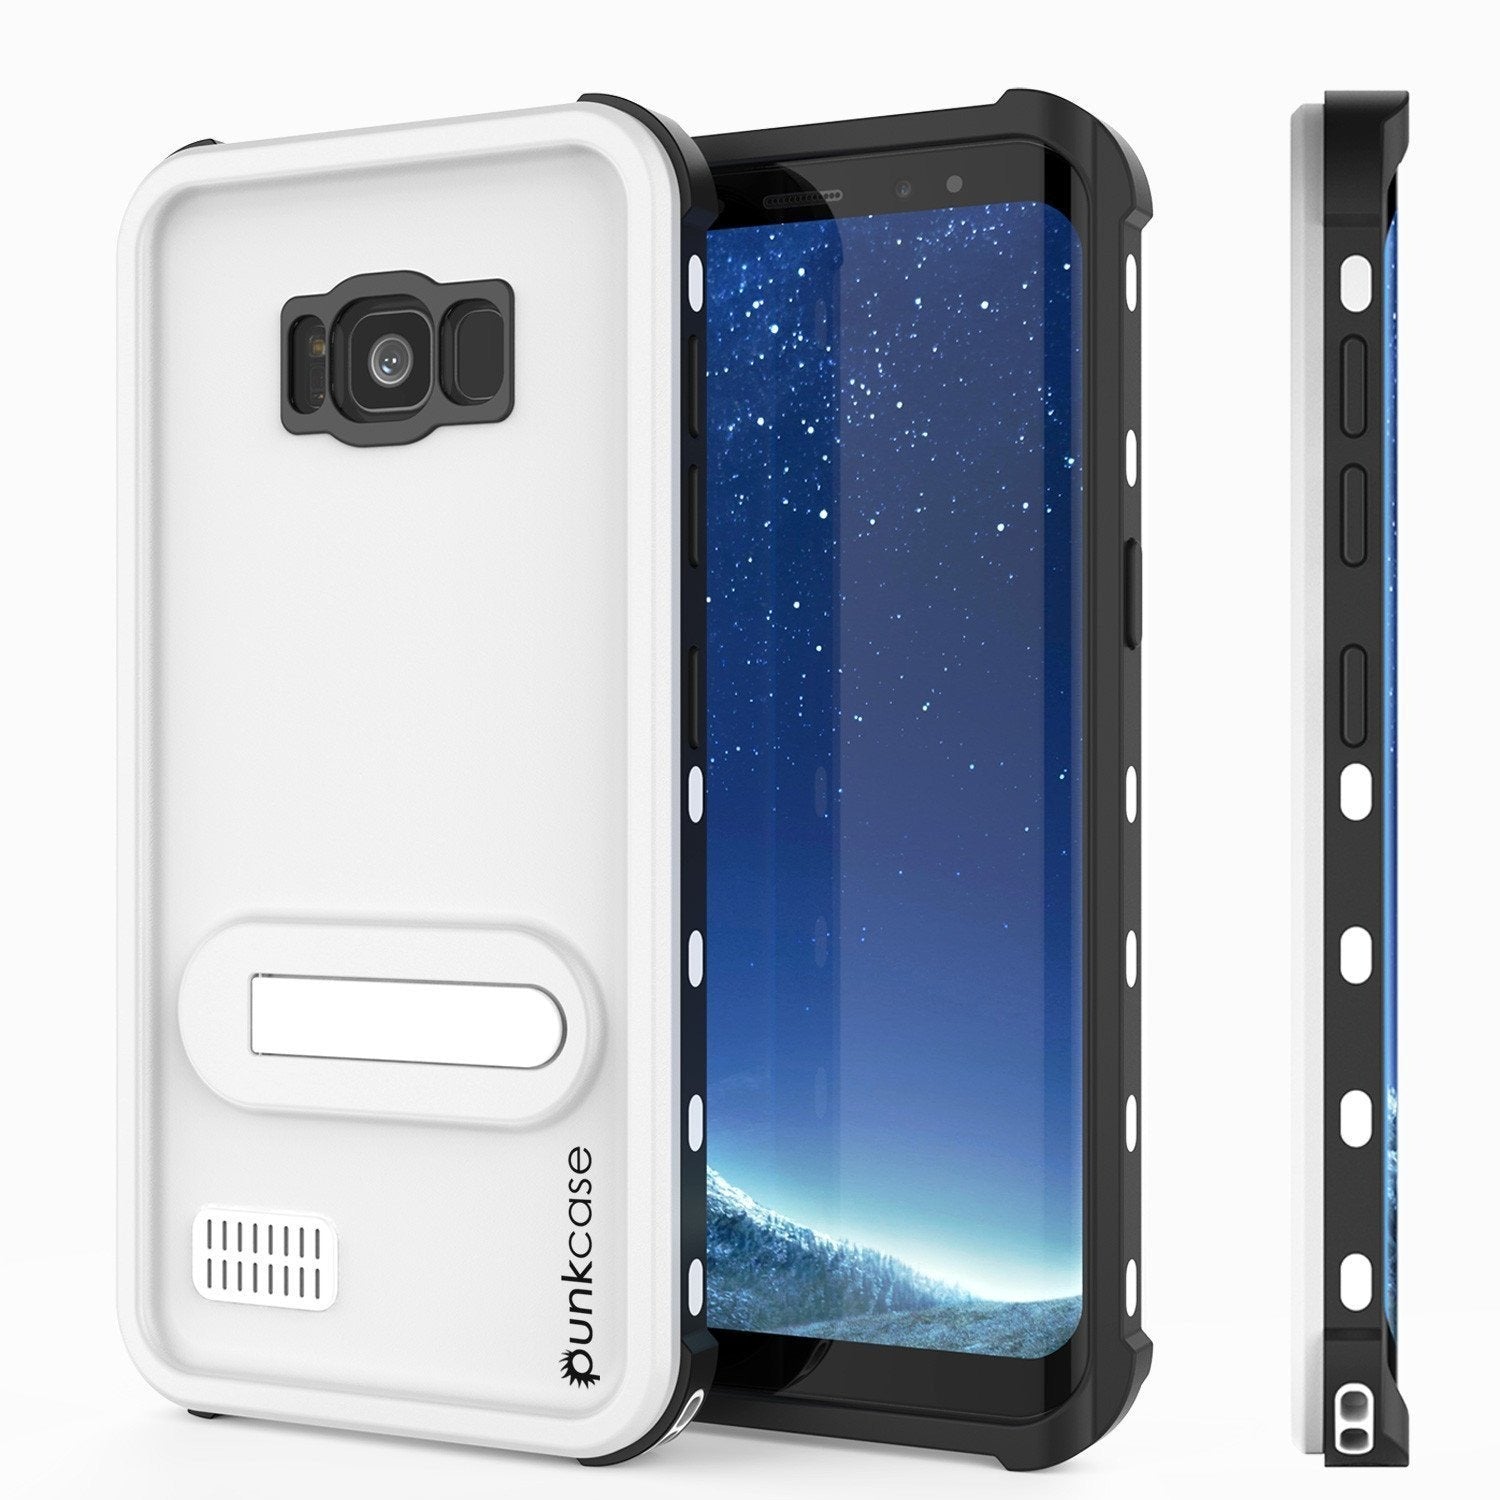 Protector [White]Galaxy S8 Waterproof Case, Punkcase [KickStud Series] [Slim Fit] [IP68 Certified] [Shockproof] [Snowproof] Armor Cover [Teal]